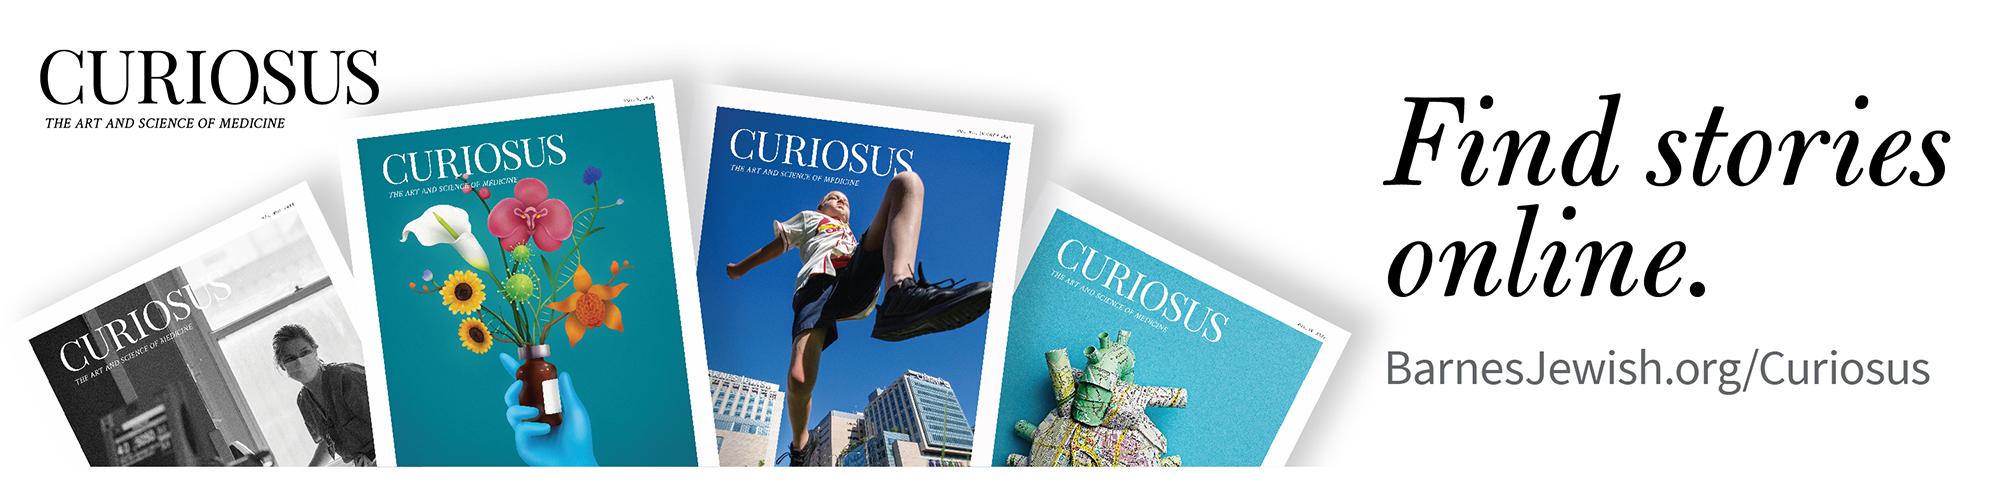 Curiosus - Find stories online